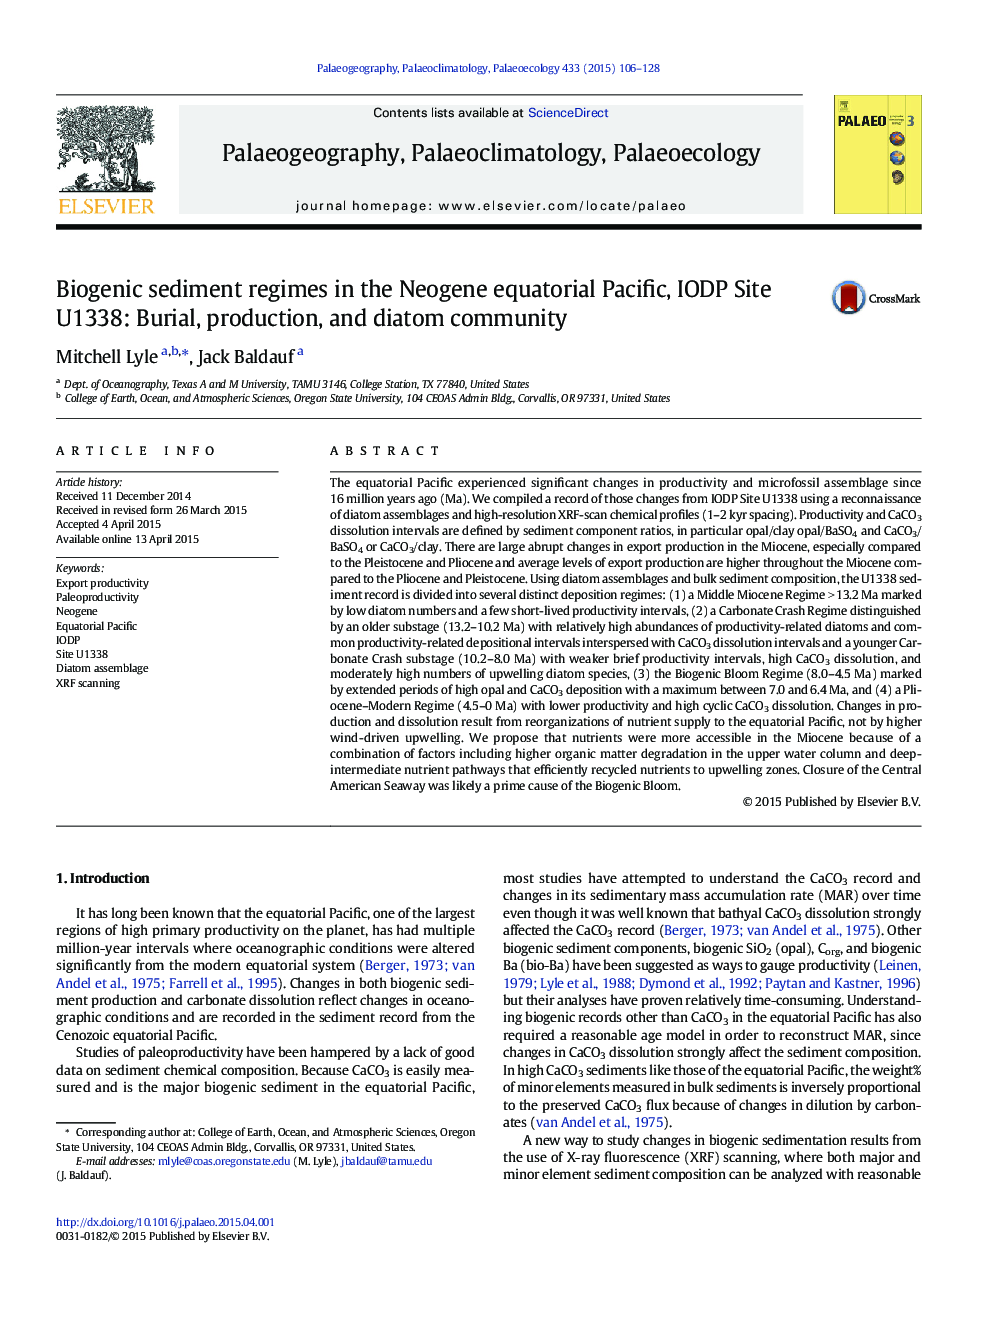 Biogenic sediment regimes in the Neogene equatorial Pacific, IODP Site U1338: Burial, production, and diatom community